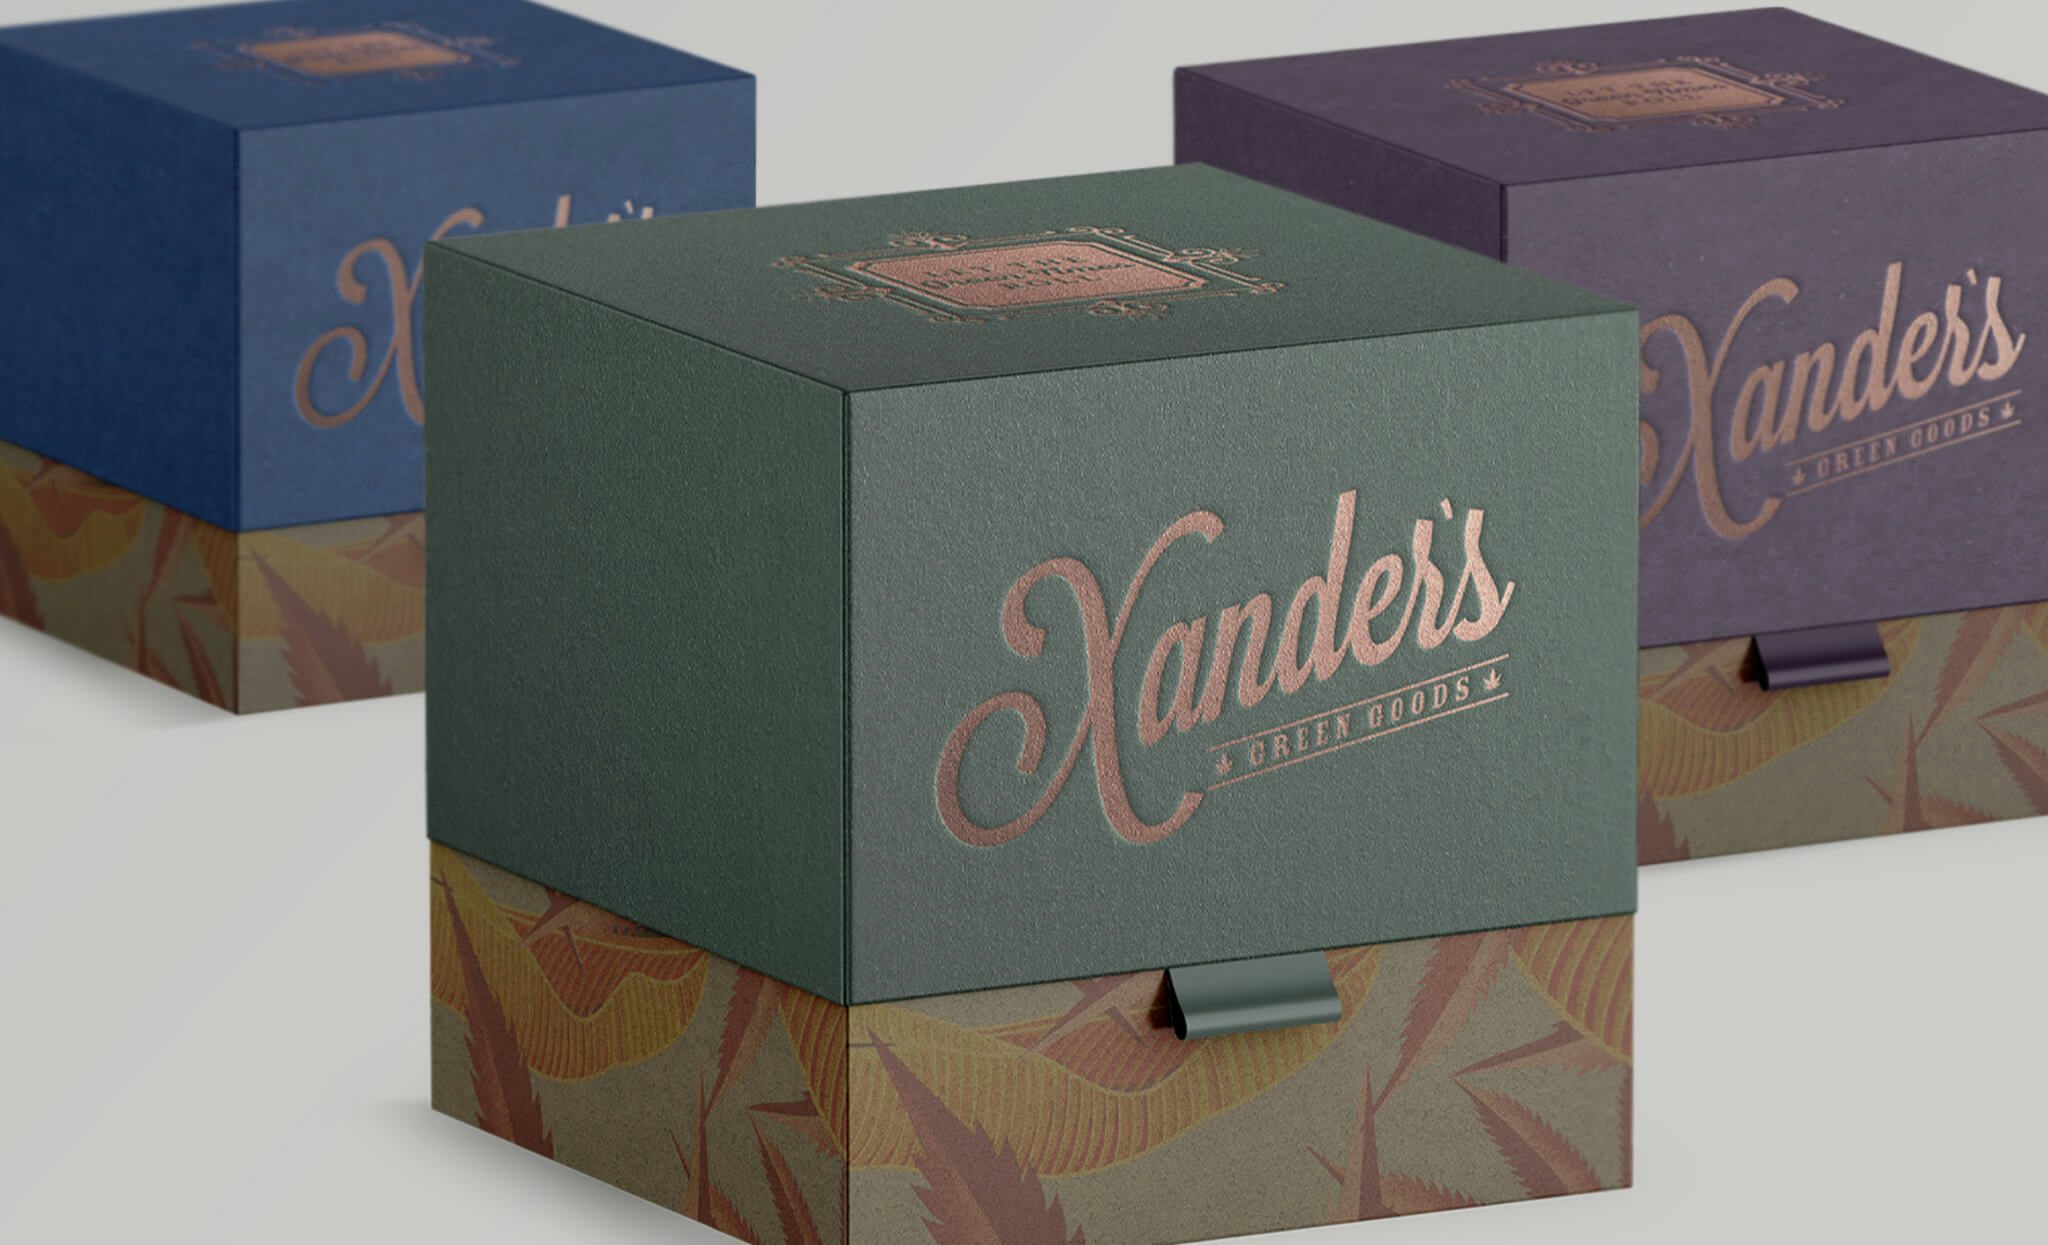 deep-sleep-studio-xanders-boxes-2048x1245